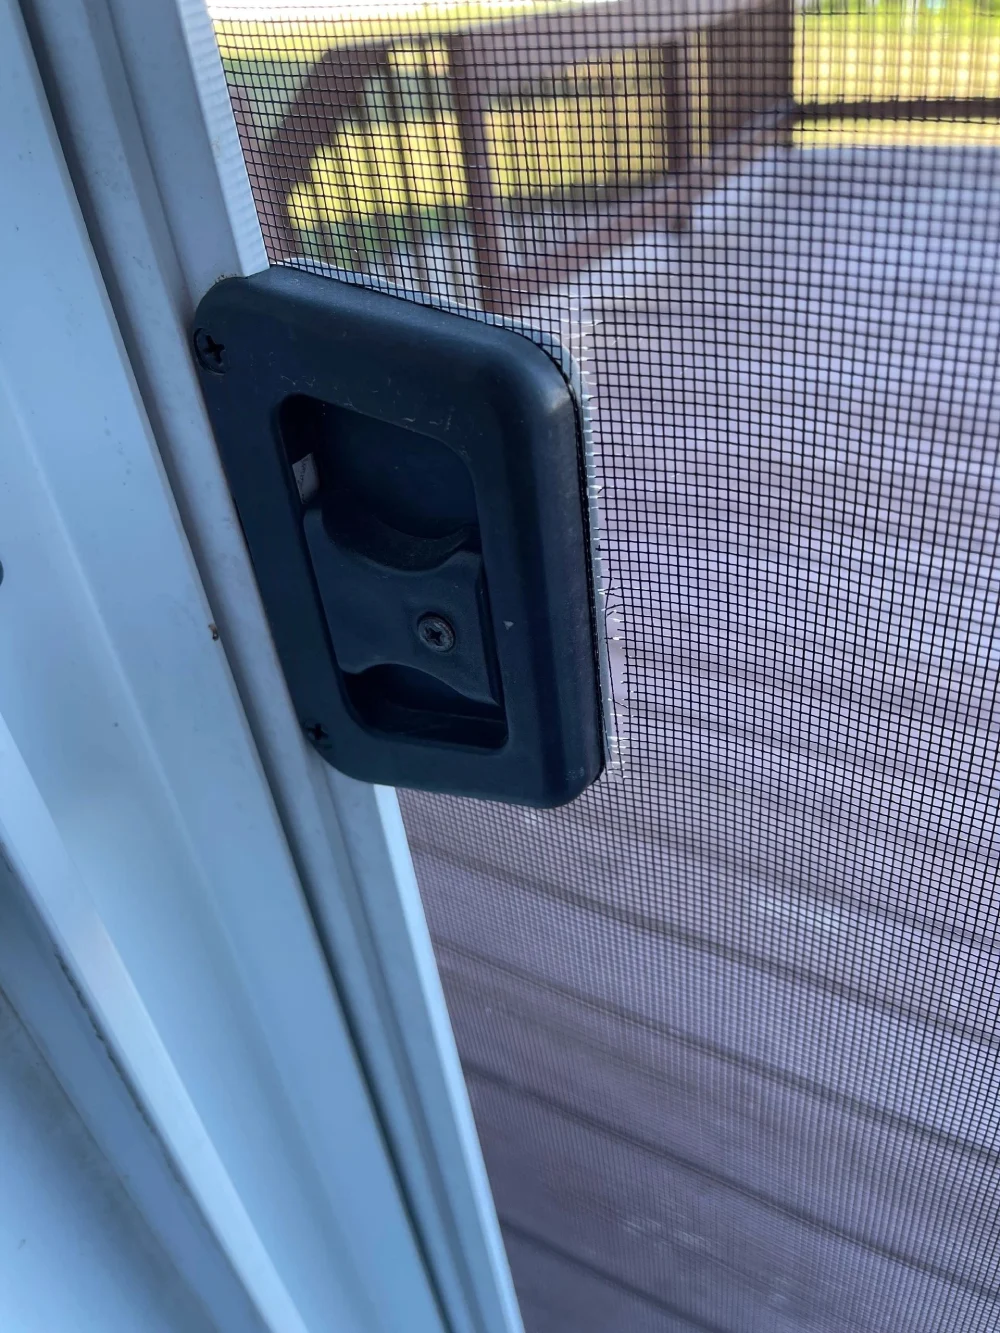 A door handle is shown on the screen.